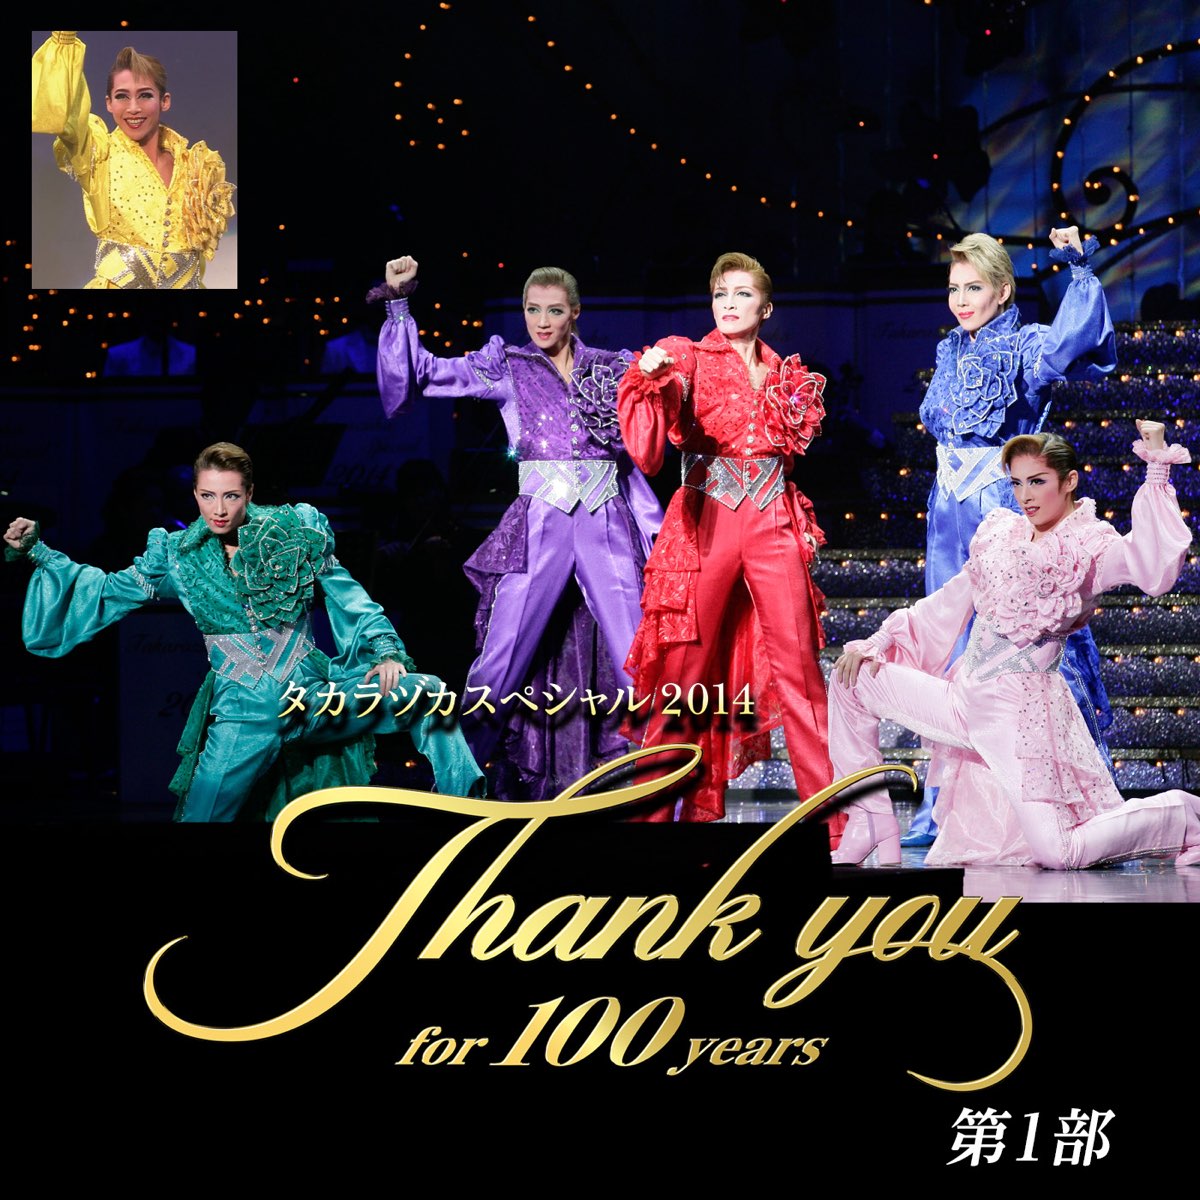 タカラヅカスペシャル2014 -Thank you for 100 years- 第1部 - 宝塚歌 